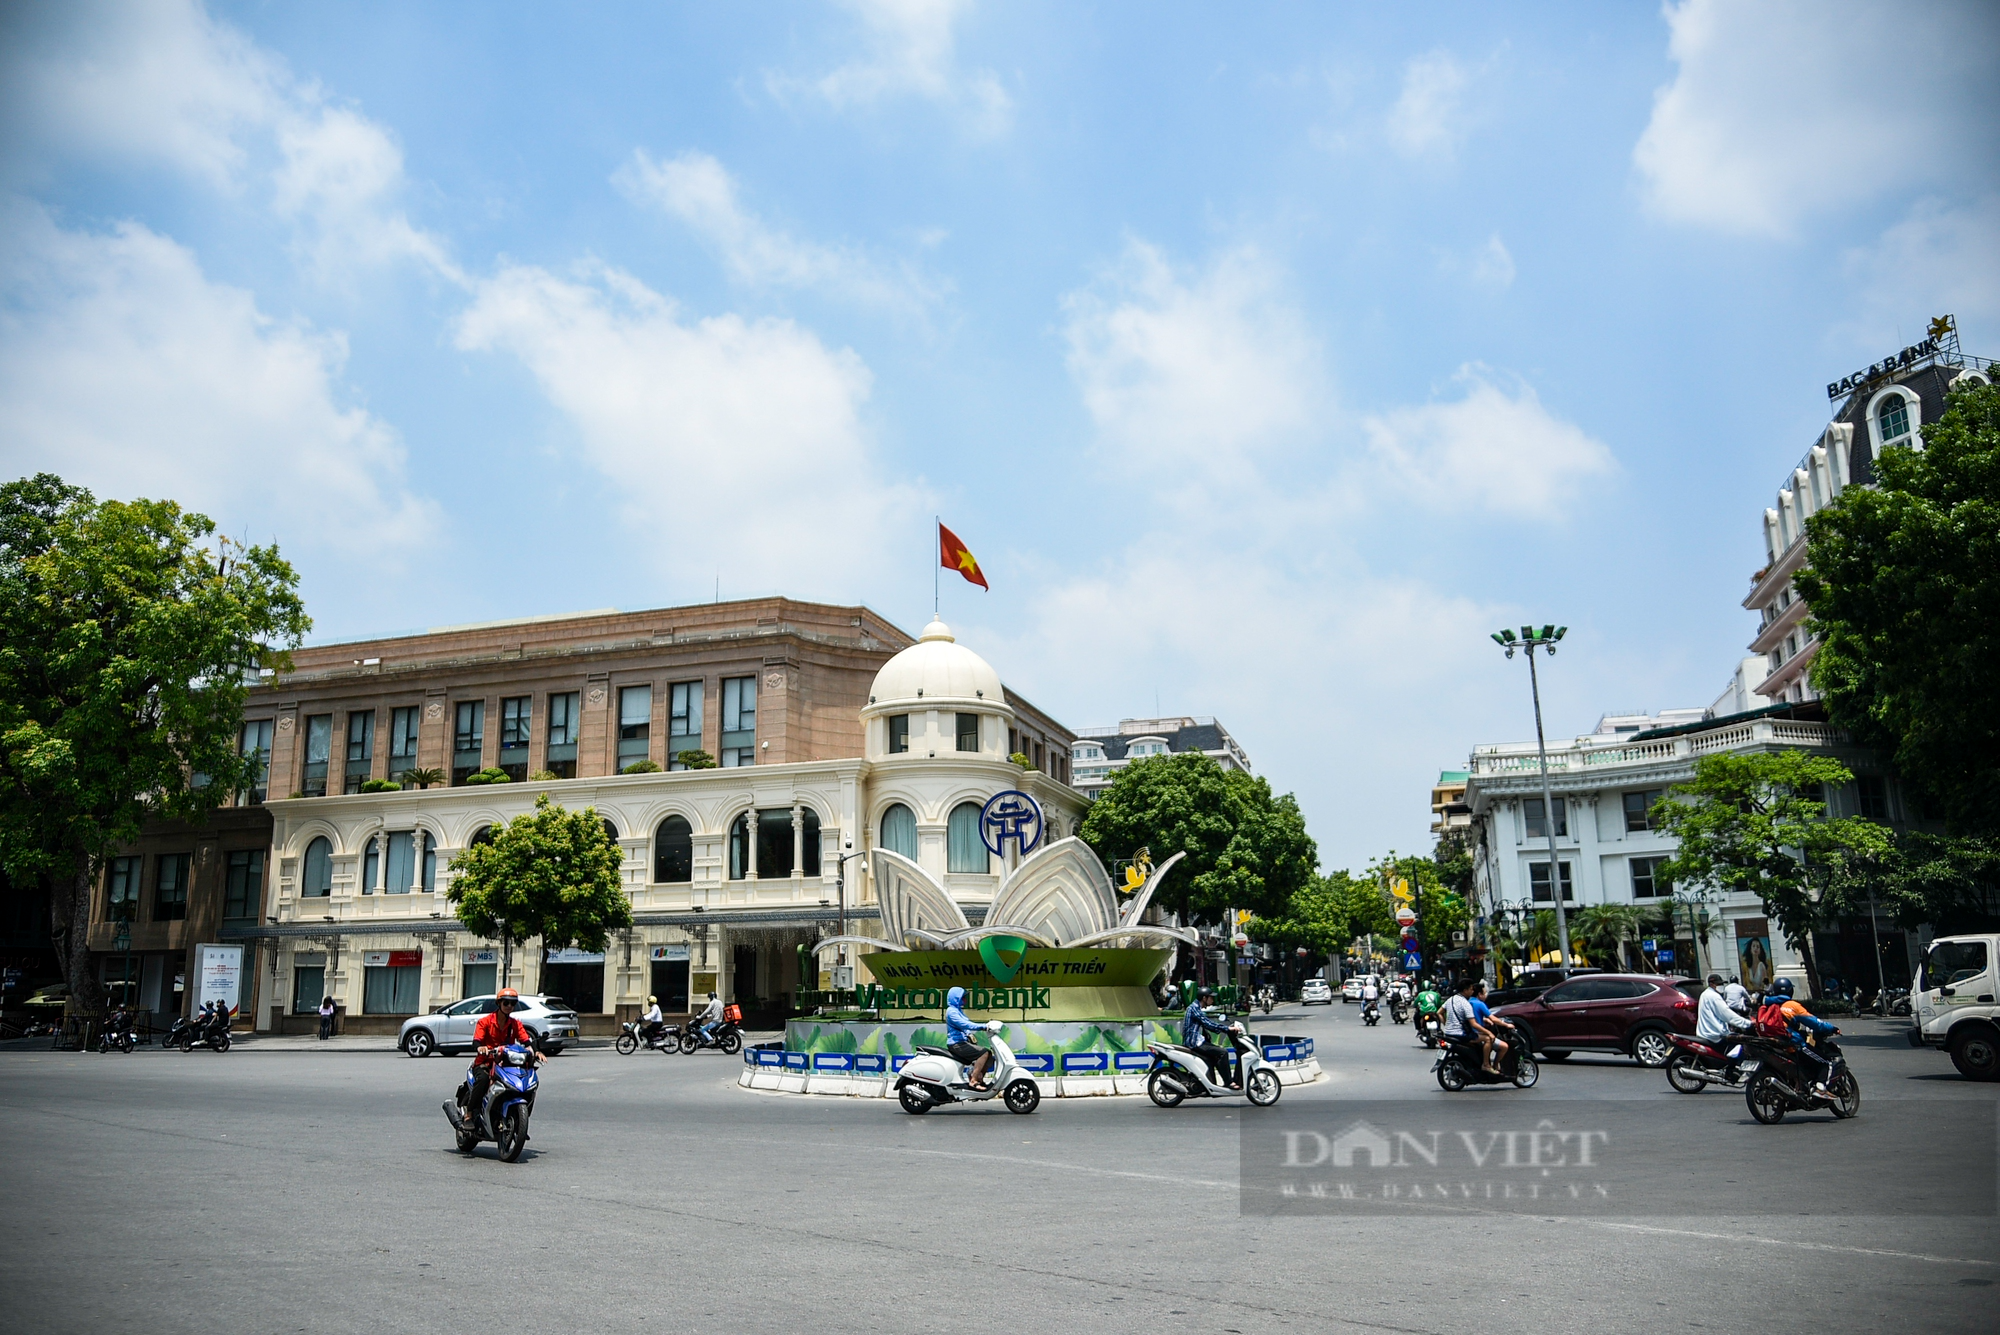 Cận cảnh khu vực quanh nhà hát Lớn được đề xuất xây nhà hát các dân tộc Việt Nam - Ảnh 4.